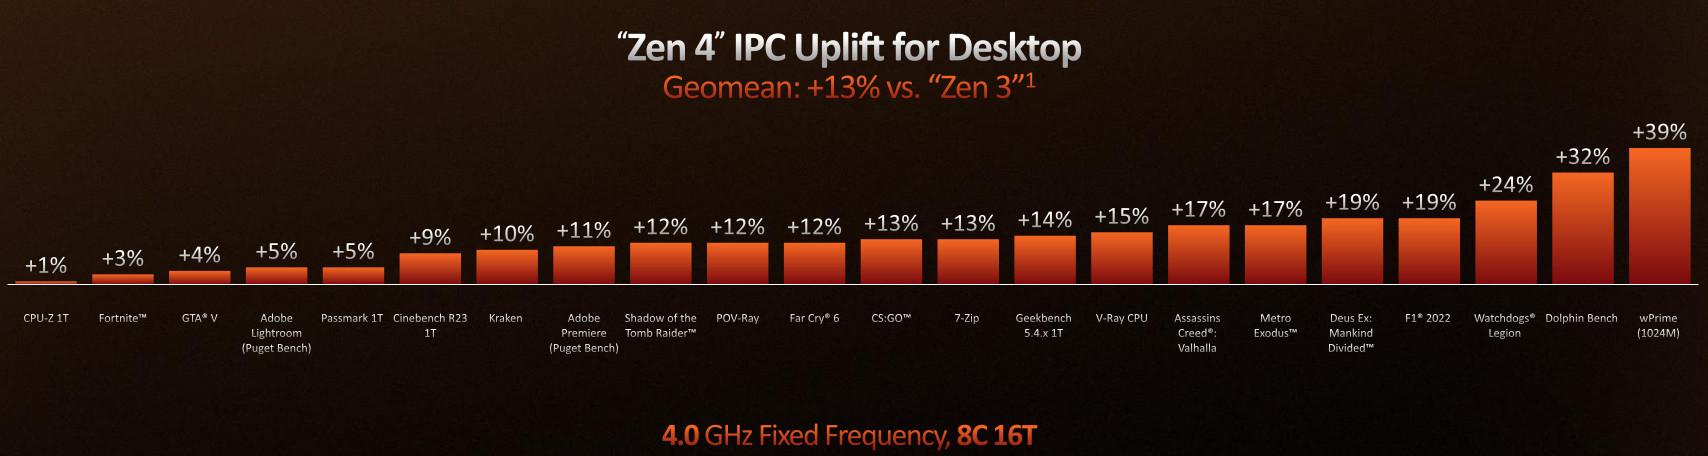 Un bon gain en IPC pour Zen 4, un !